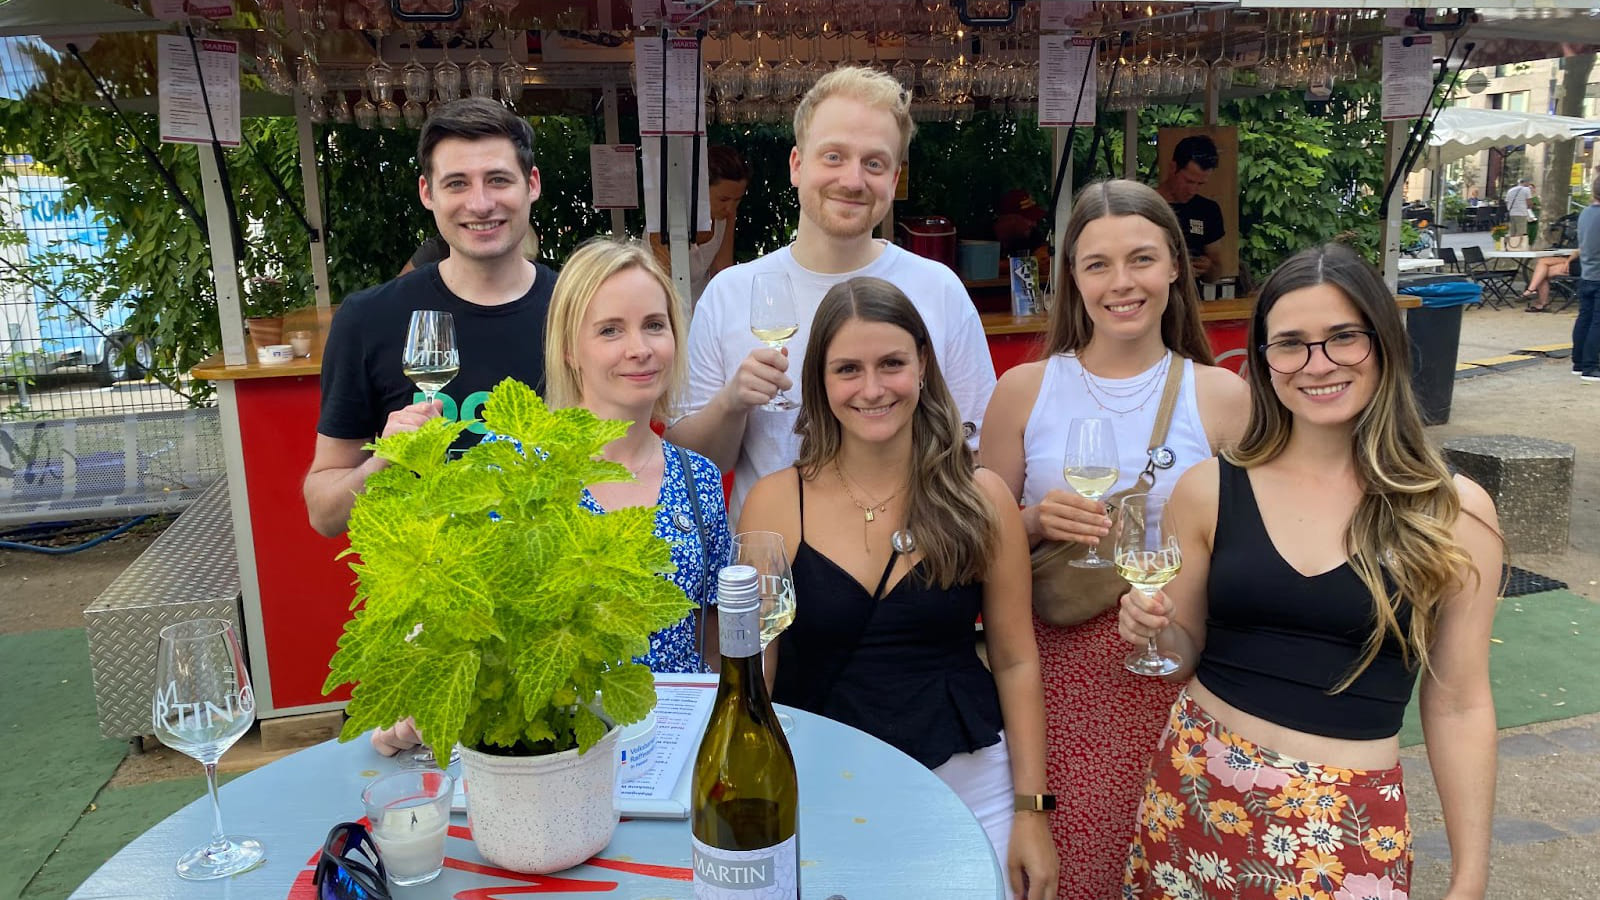 Nach vielen digitalen Events endlich wieder eine "physische" Veranstaltung: Ein Foto von sechs Mitarbeiterinnen und Mitarbeitern von Seibert Media, wie sie Gläser mit Weißwein halten und lächeln.